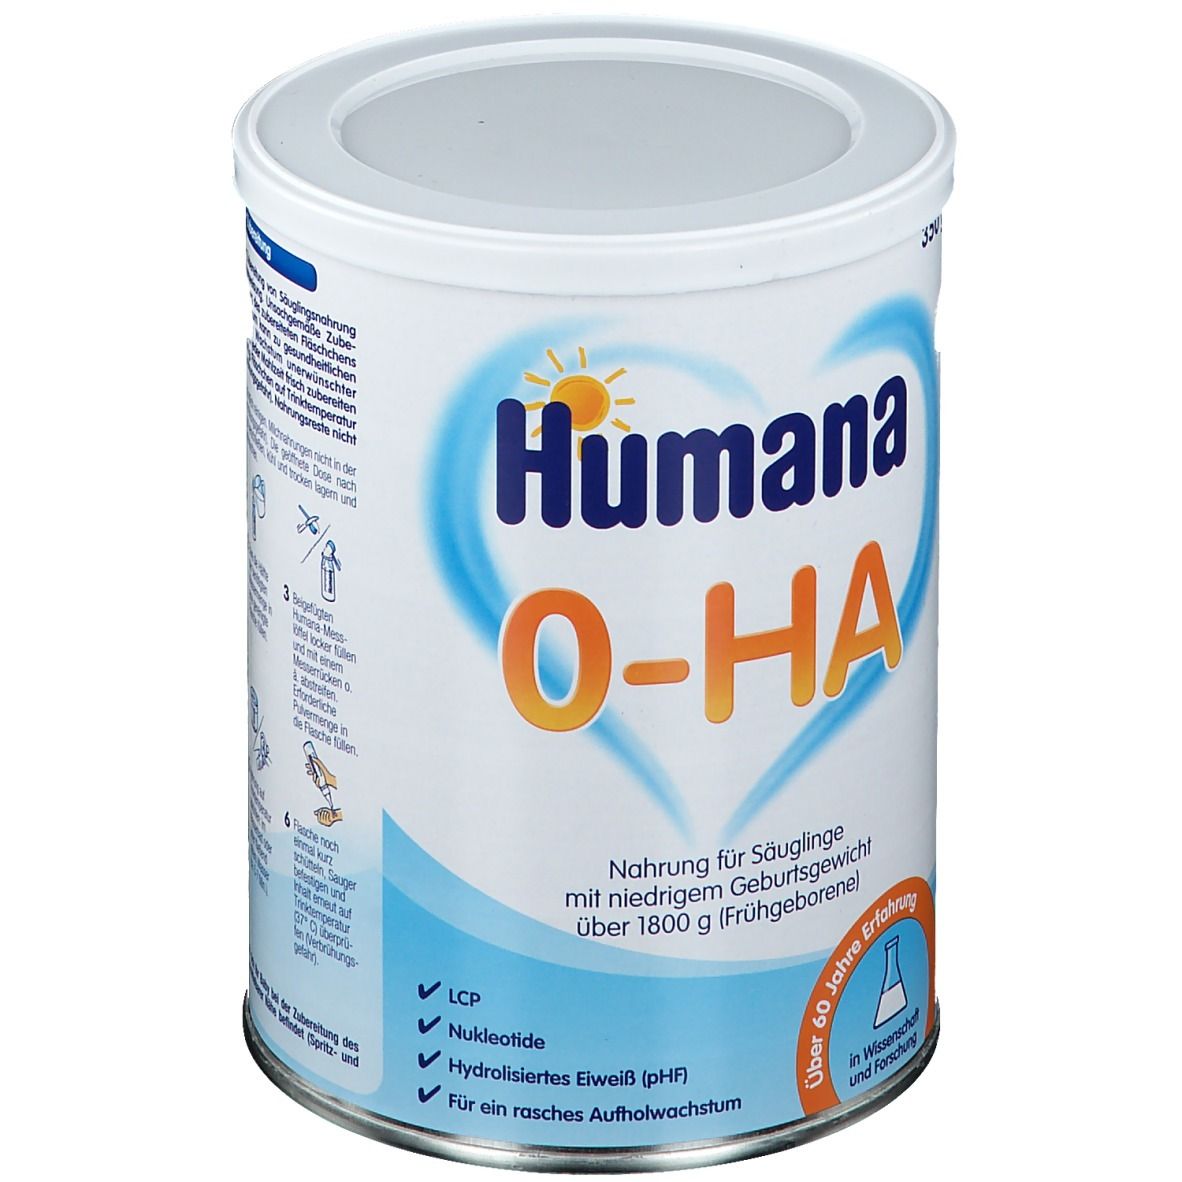 Humana 0-HA